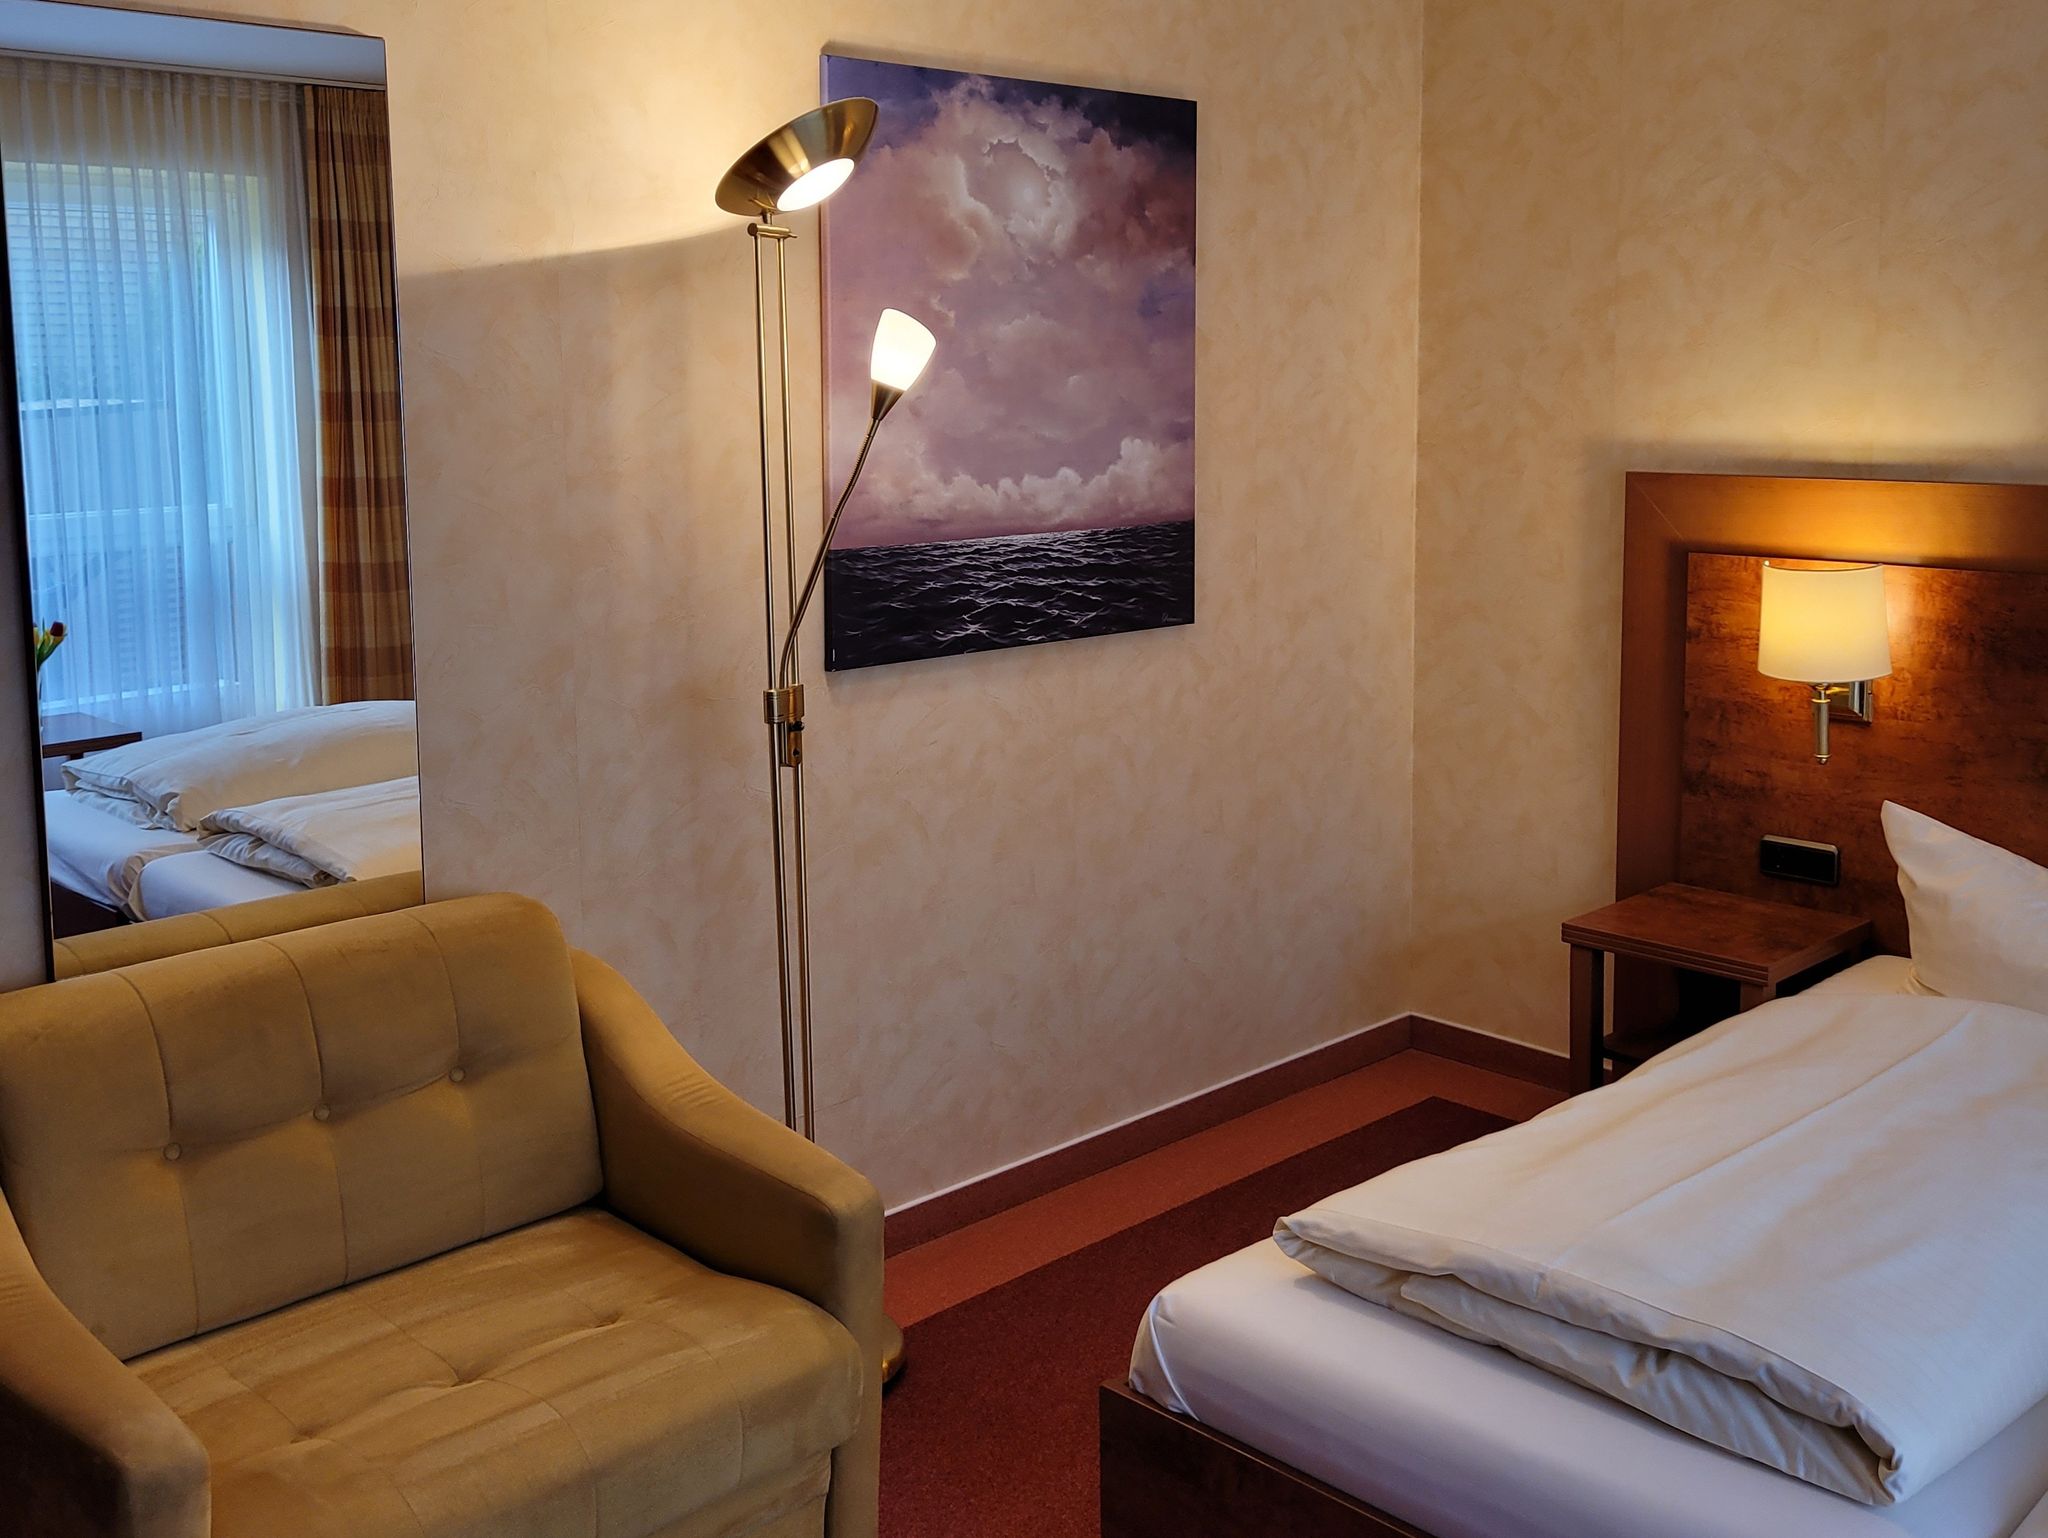 Nordic Avantage Hotel